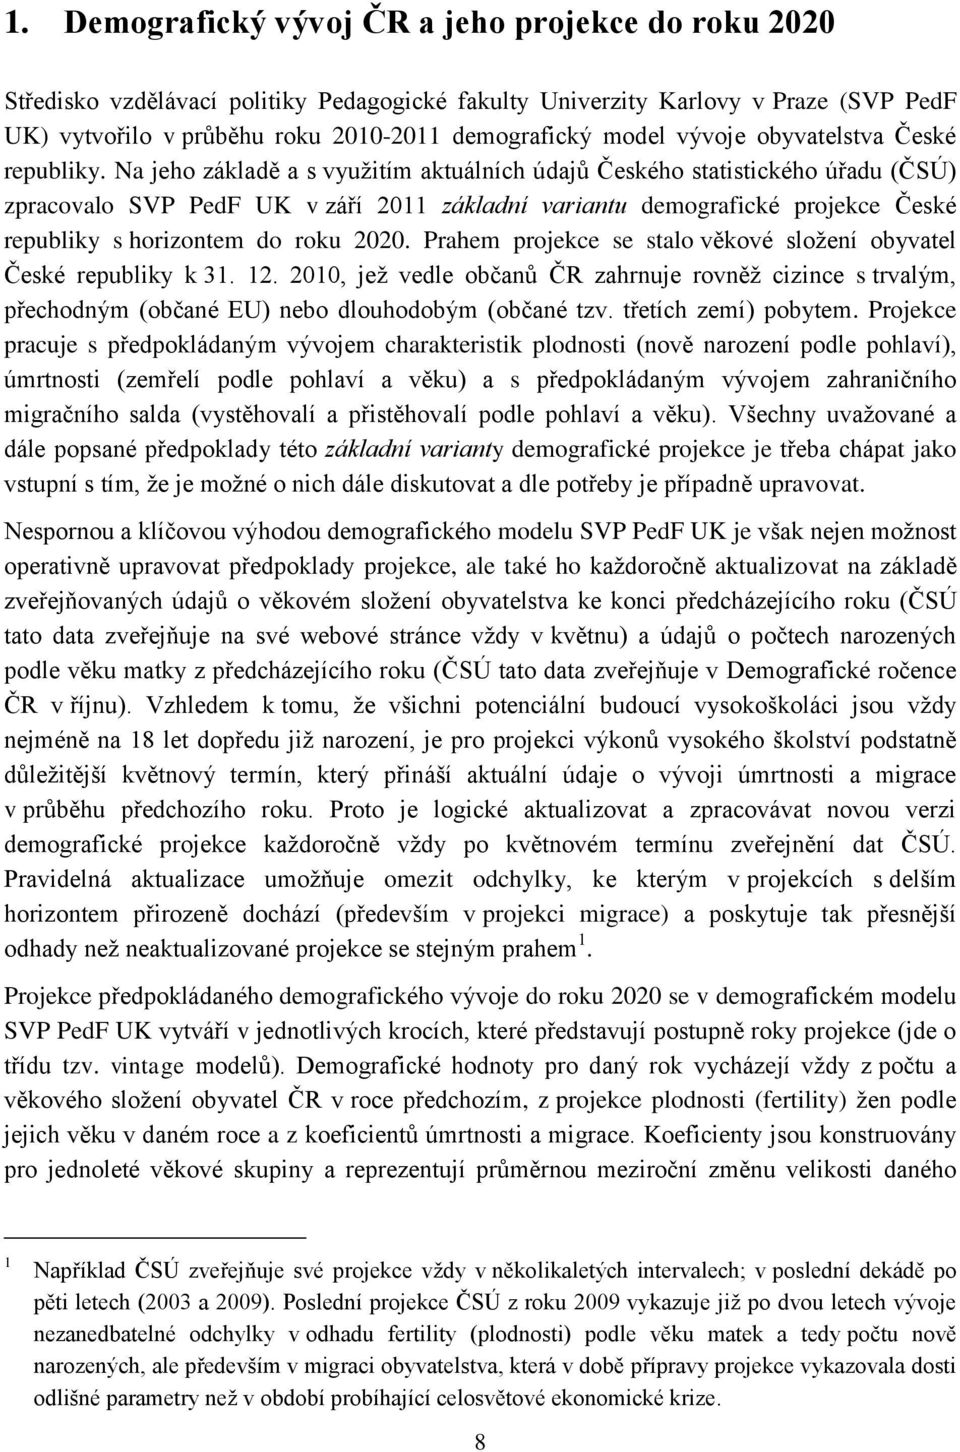 Na jeho základě a s využitím aktuálních údajů Českého statistického úřadu (ČSÚ) zpracovalo SVP PedF UK v září 2011 základní variantu demografické projekce České republiky s horizontem do roku 2020.